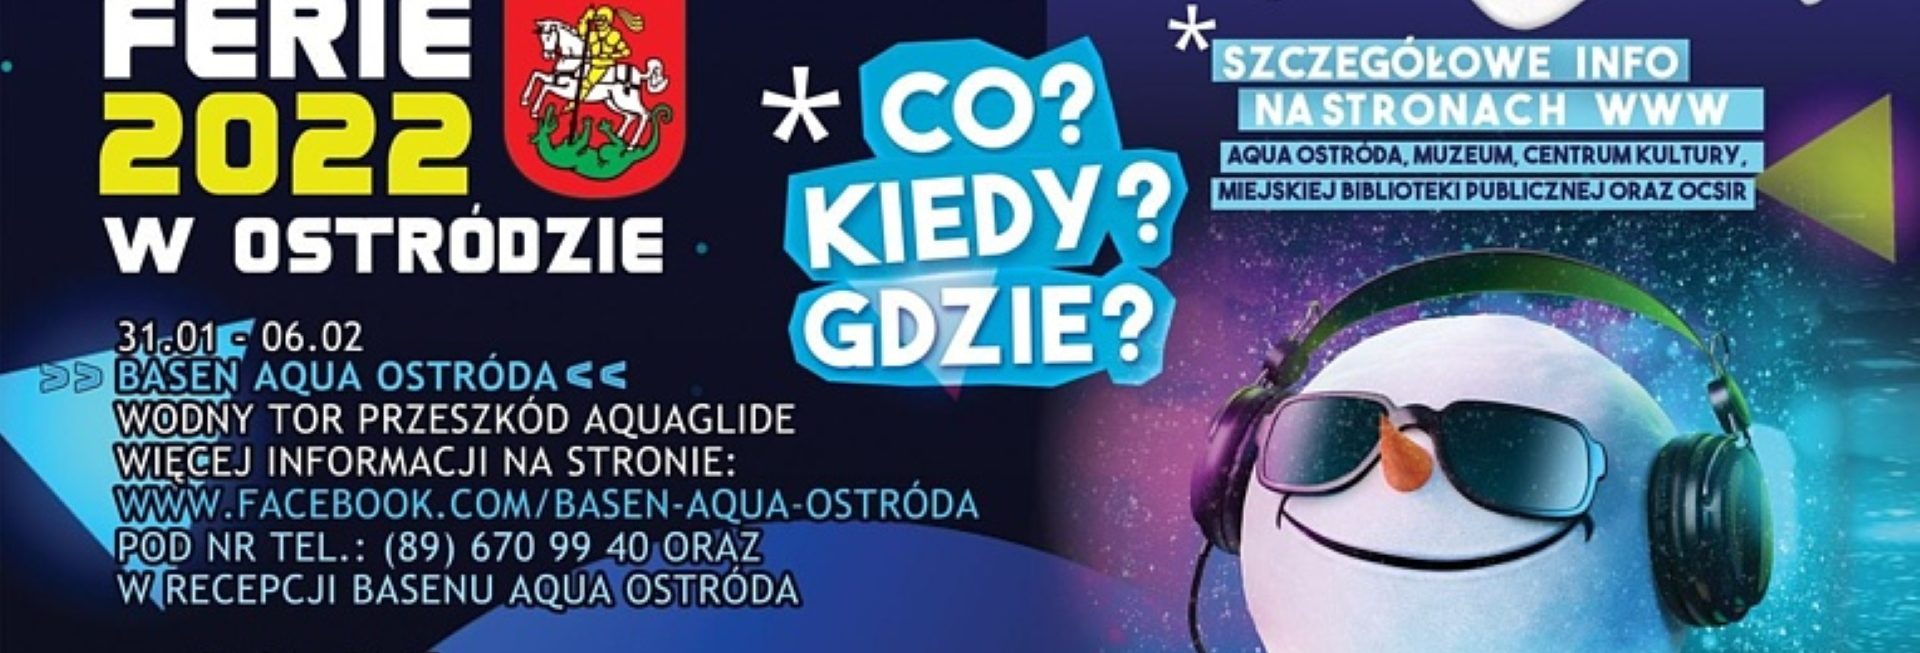 Plakat graficzny zapraszający do Ostródy na Ferie zimowe 2022 w Ostródzie.